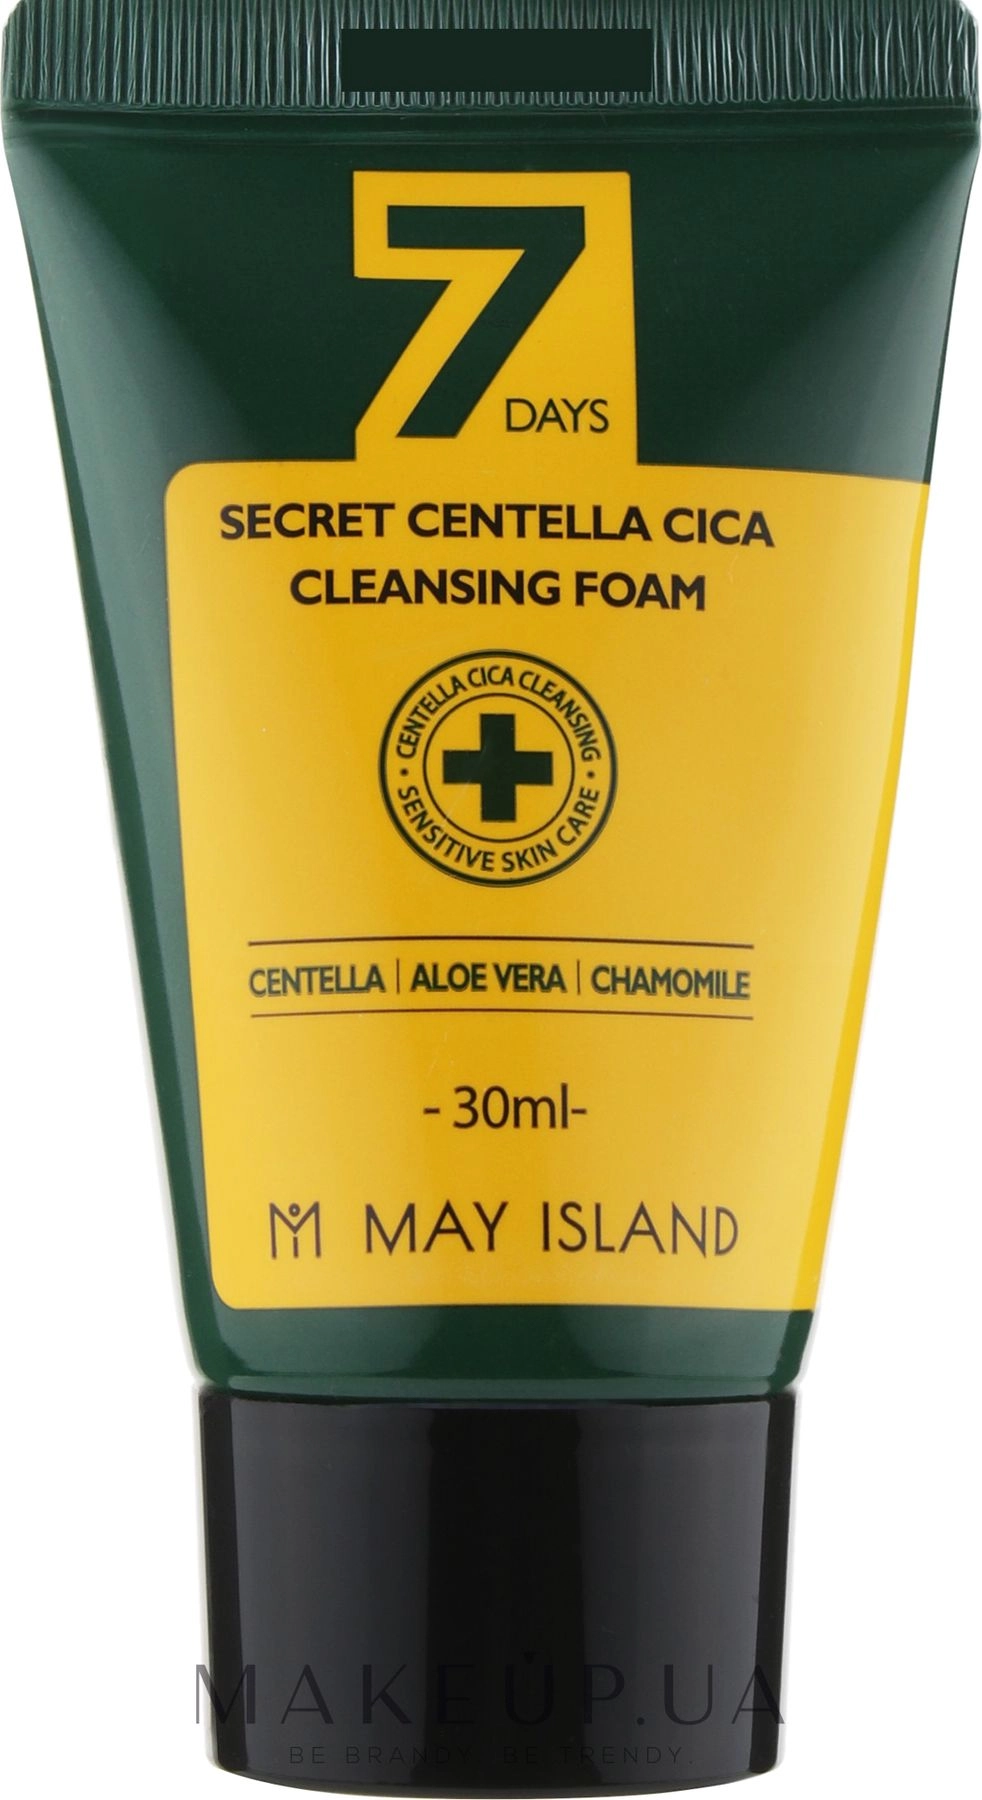 Очищающая пенка для умывания для проблемной и чувствительной кожи - May Island 7 Days Secret Centella Cica Cleansing Foam, мини, 30 мл - фото N1